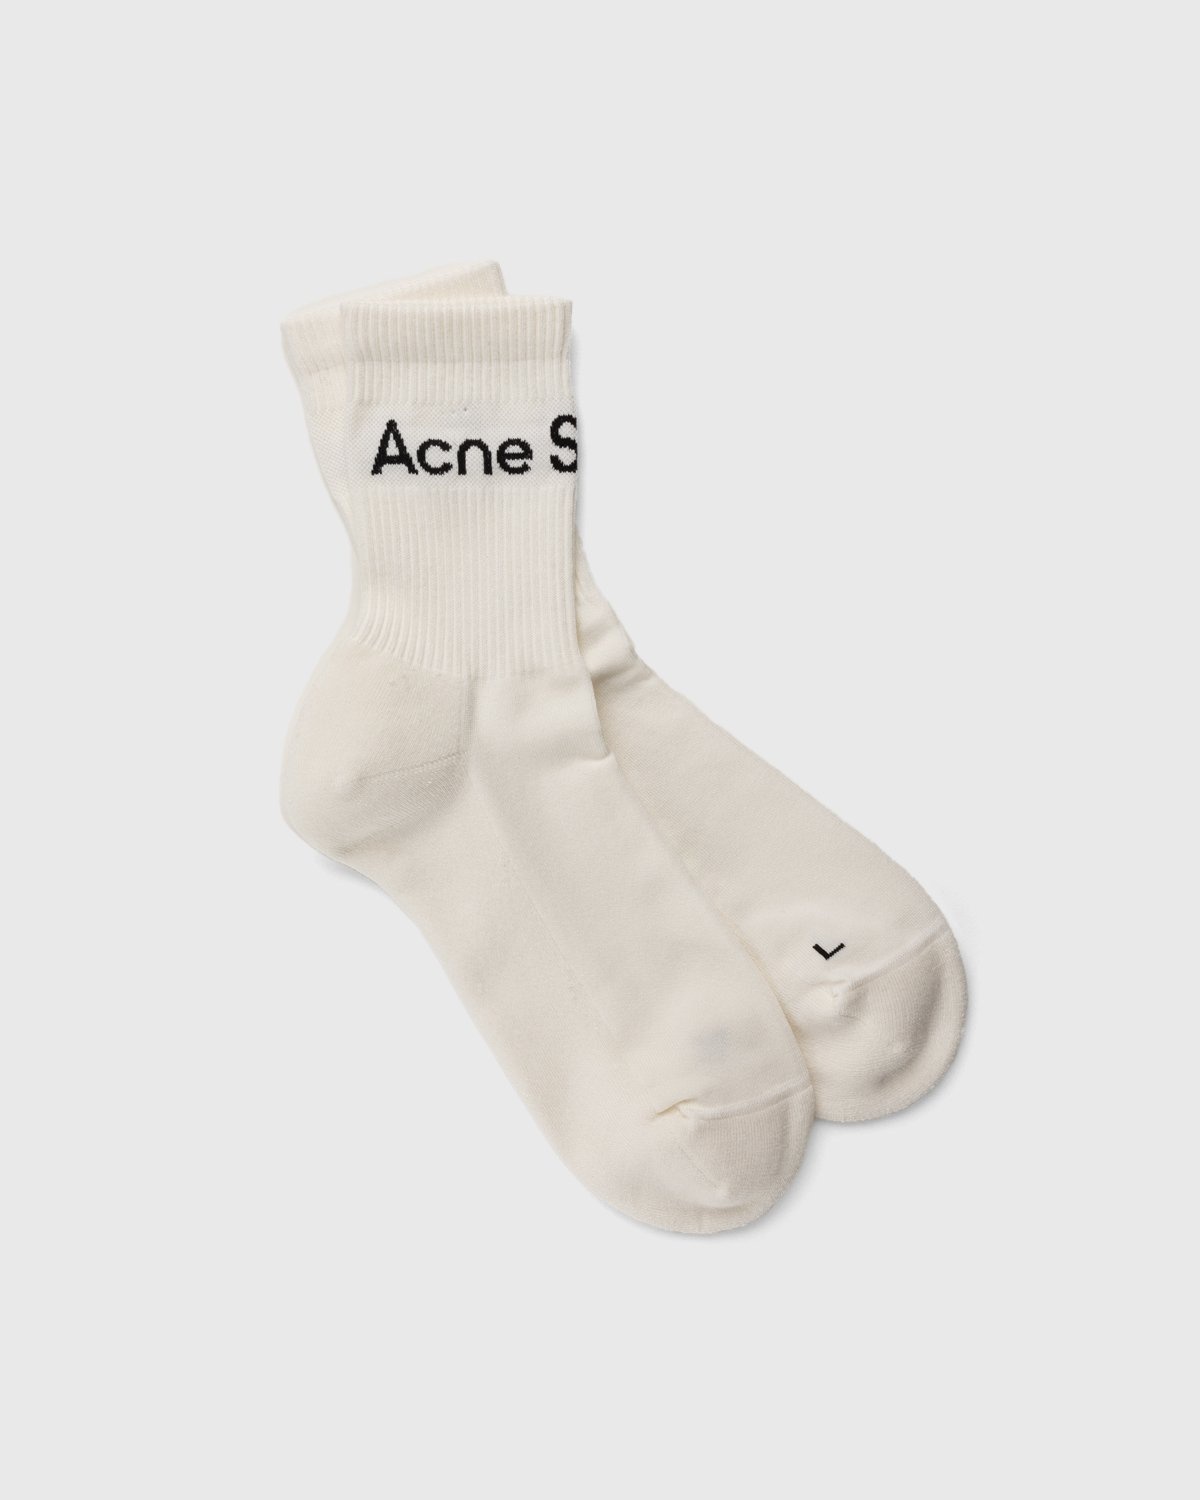 Acne Studios – Ribbed Logo Socks Black/white - Socks - White - Image 1